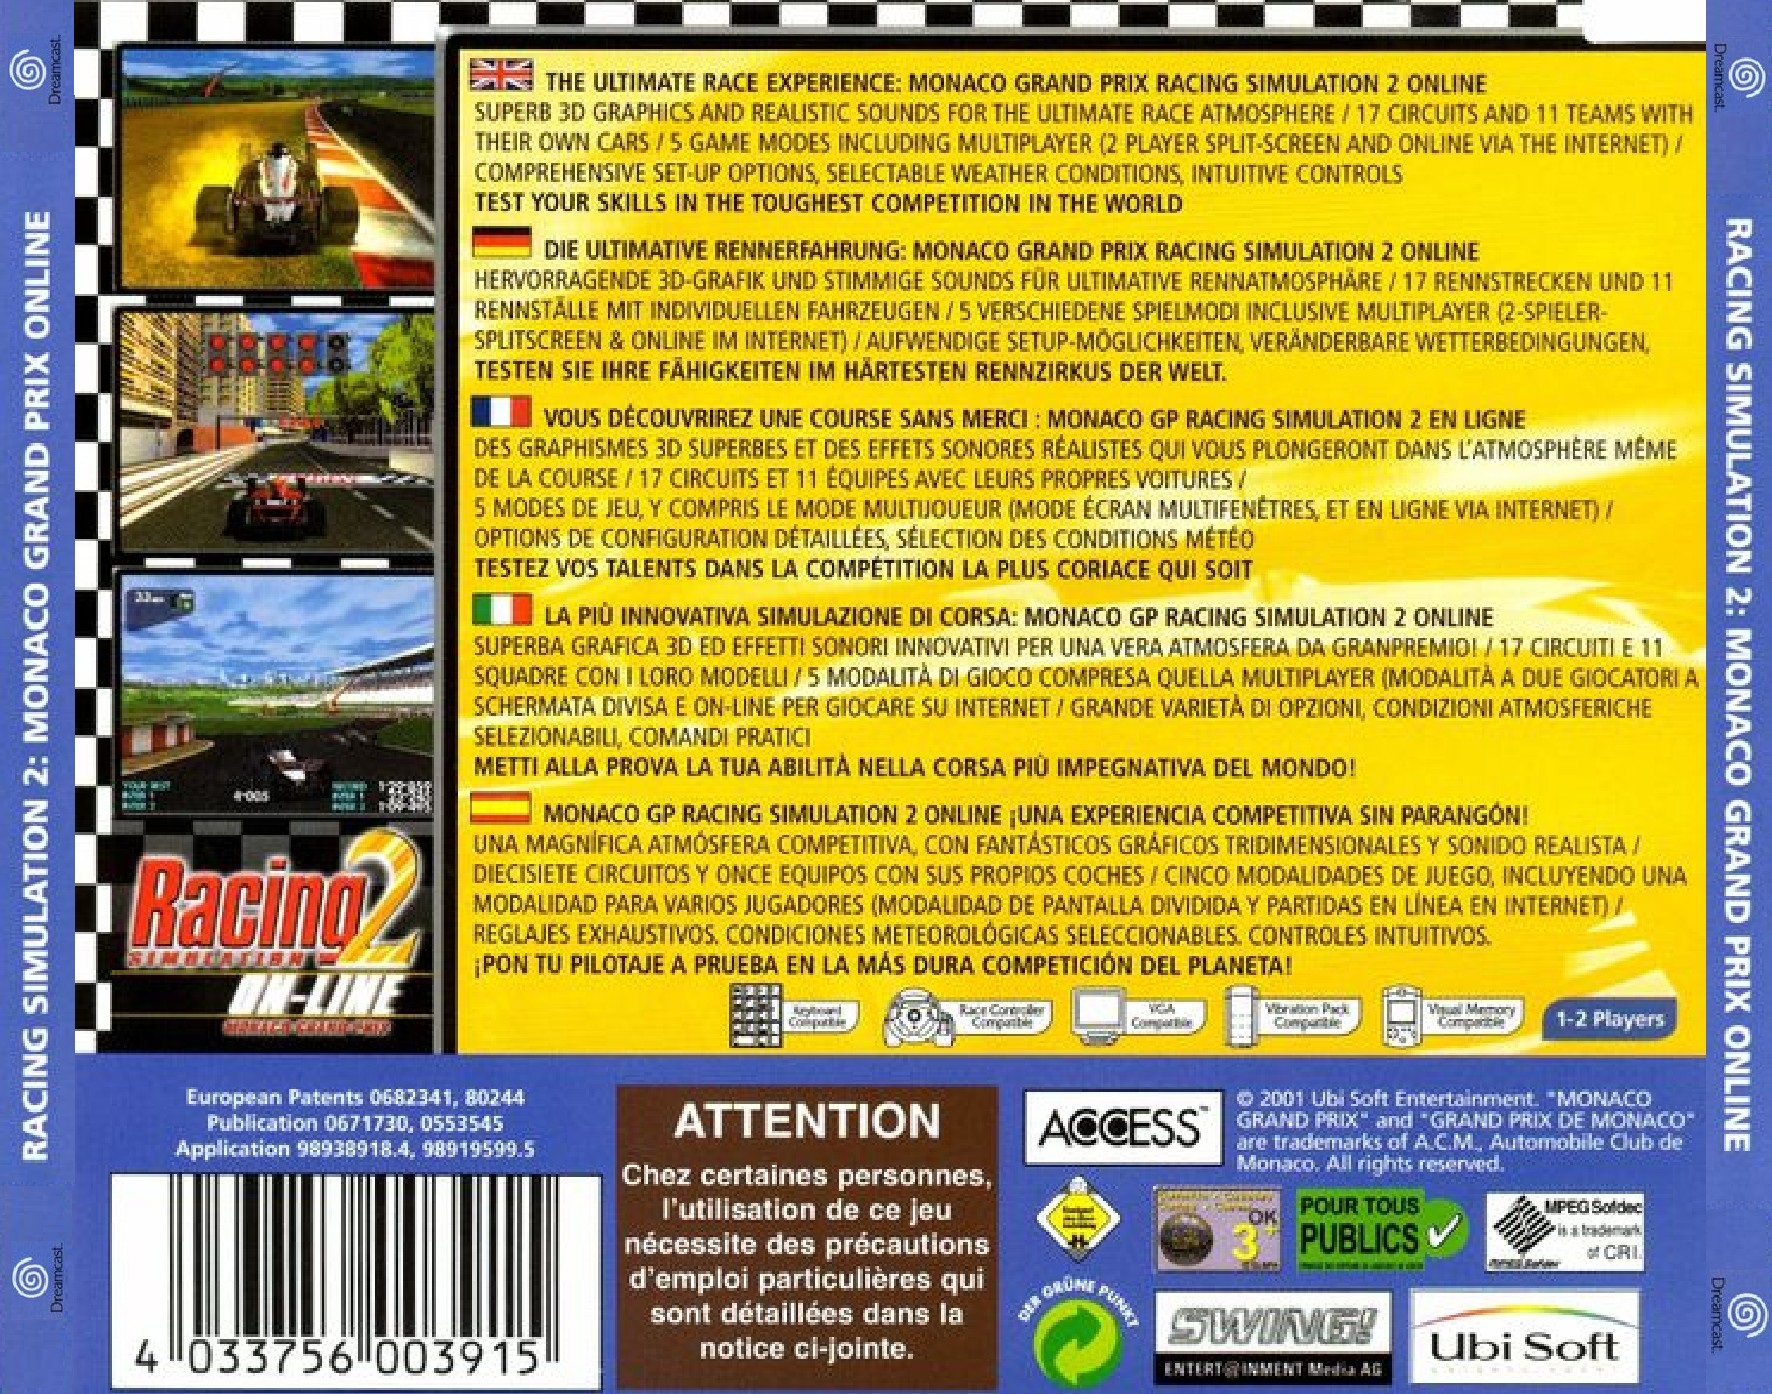 Racing Simulation2 Online Monaco GP-Back.jpg